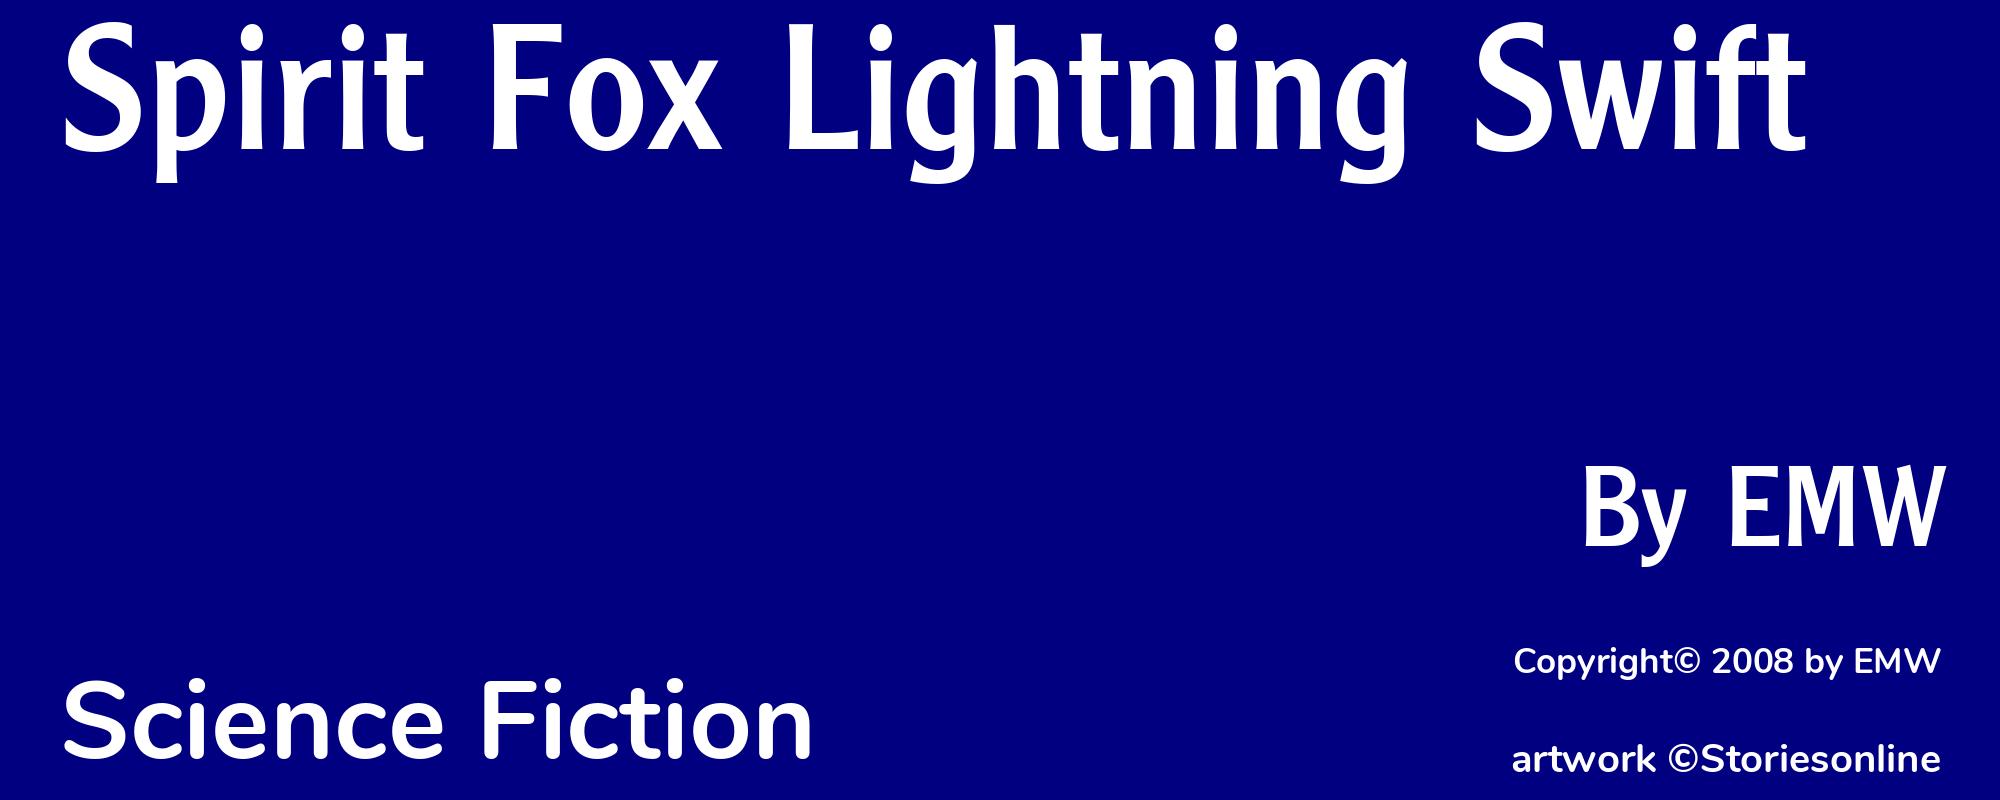 Spirit Fox Lightning Swift - Cover